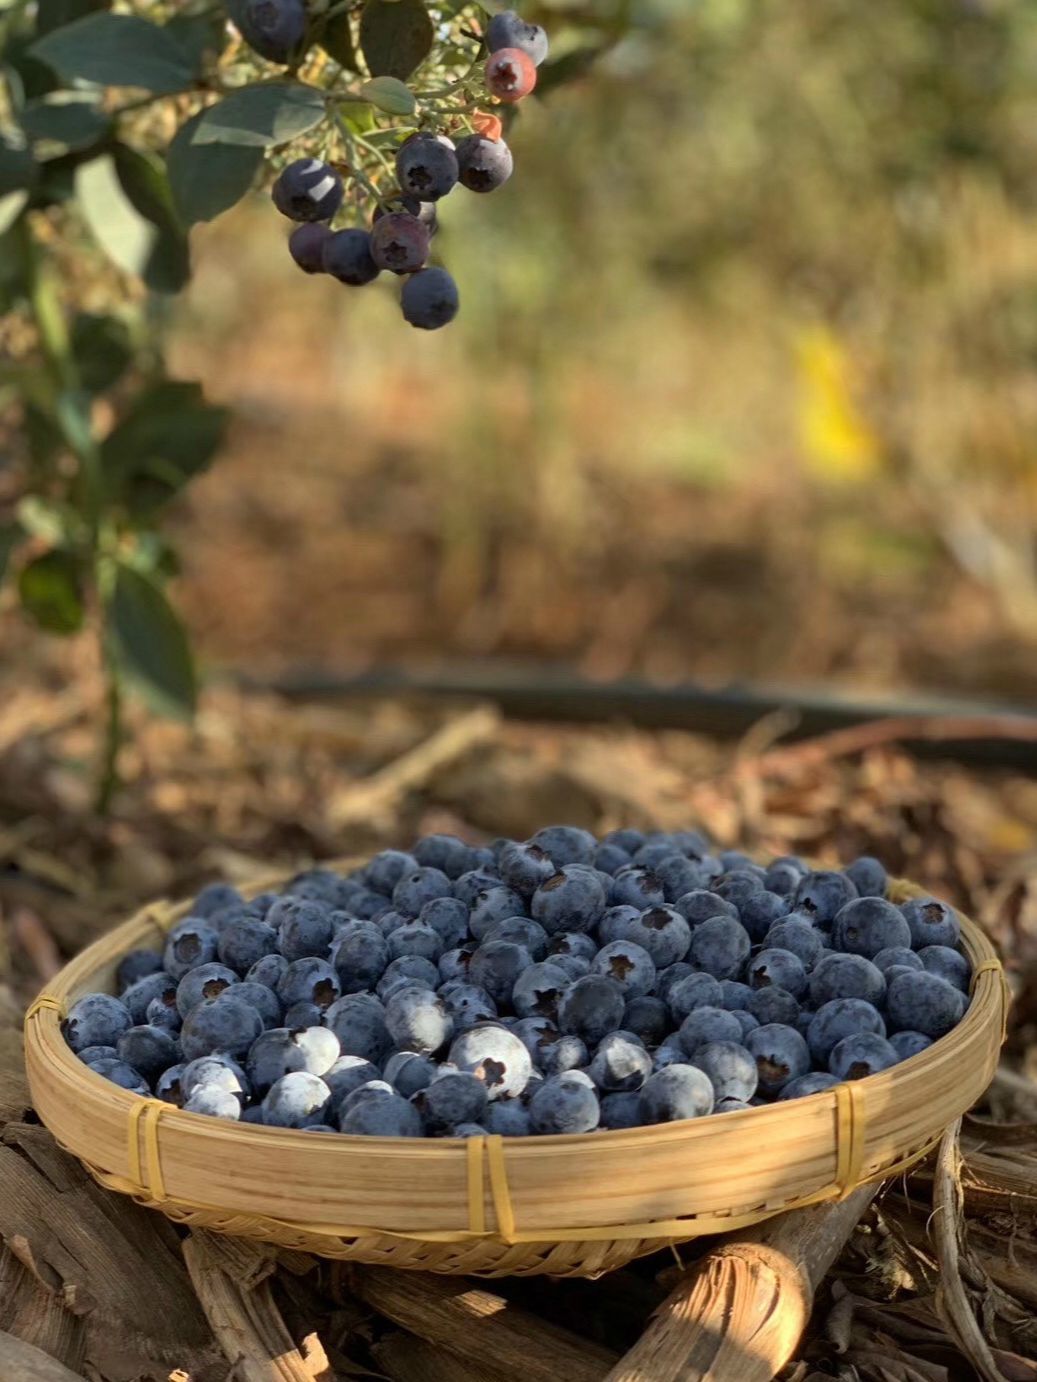 全世界看好的高端蓝莓产区原来藏在云南